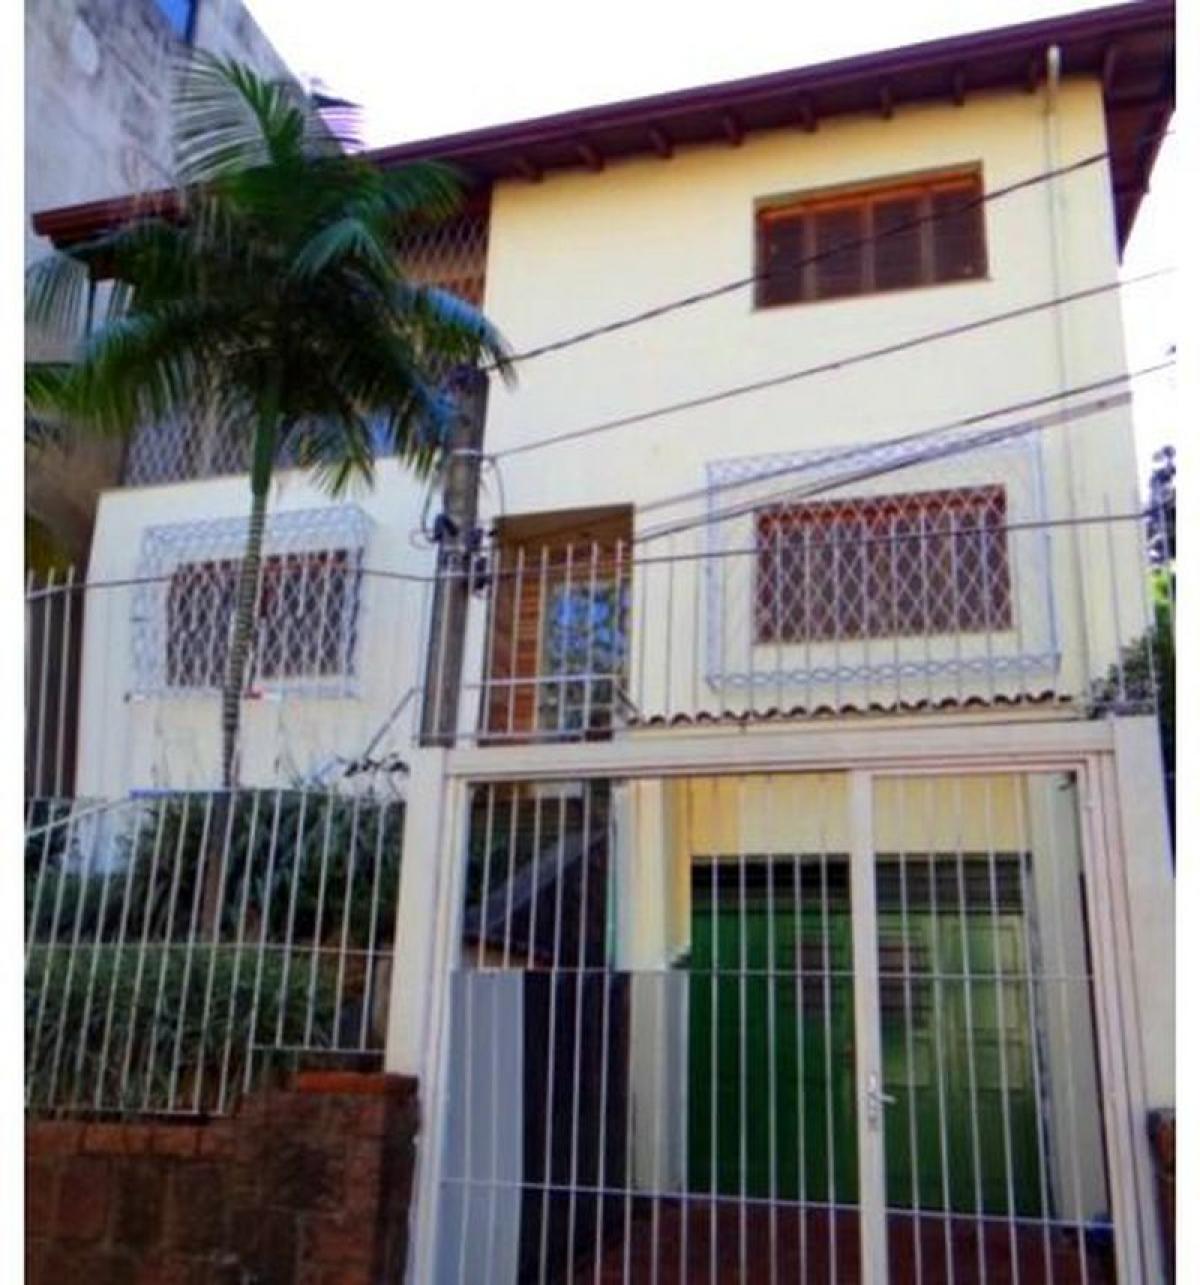 Picture of Home For Sale in Porto Alegre, Rio Grande do Sul, Brazil